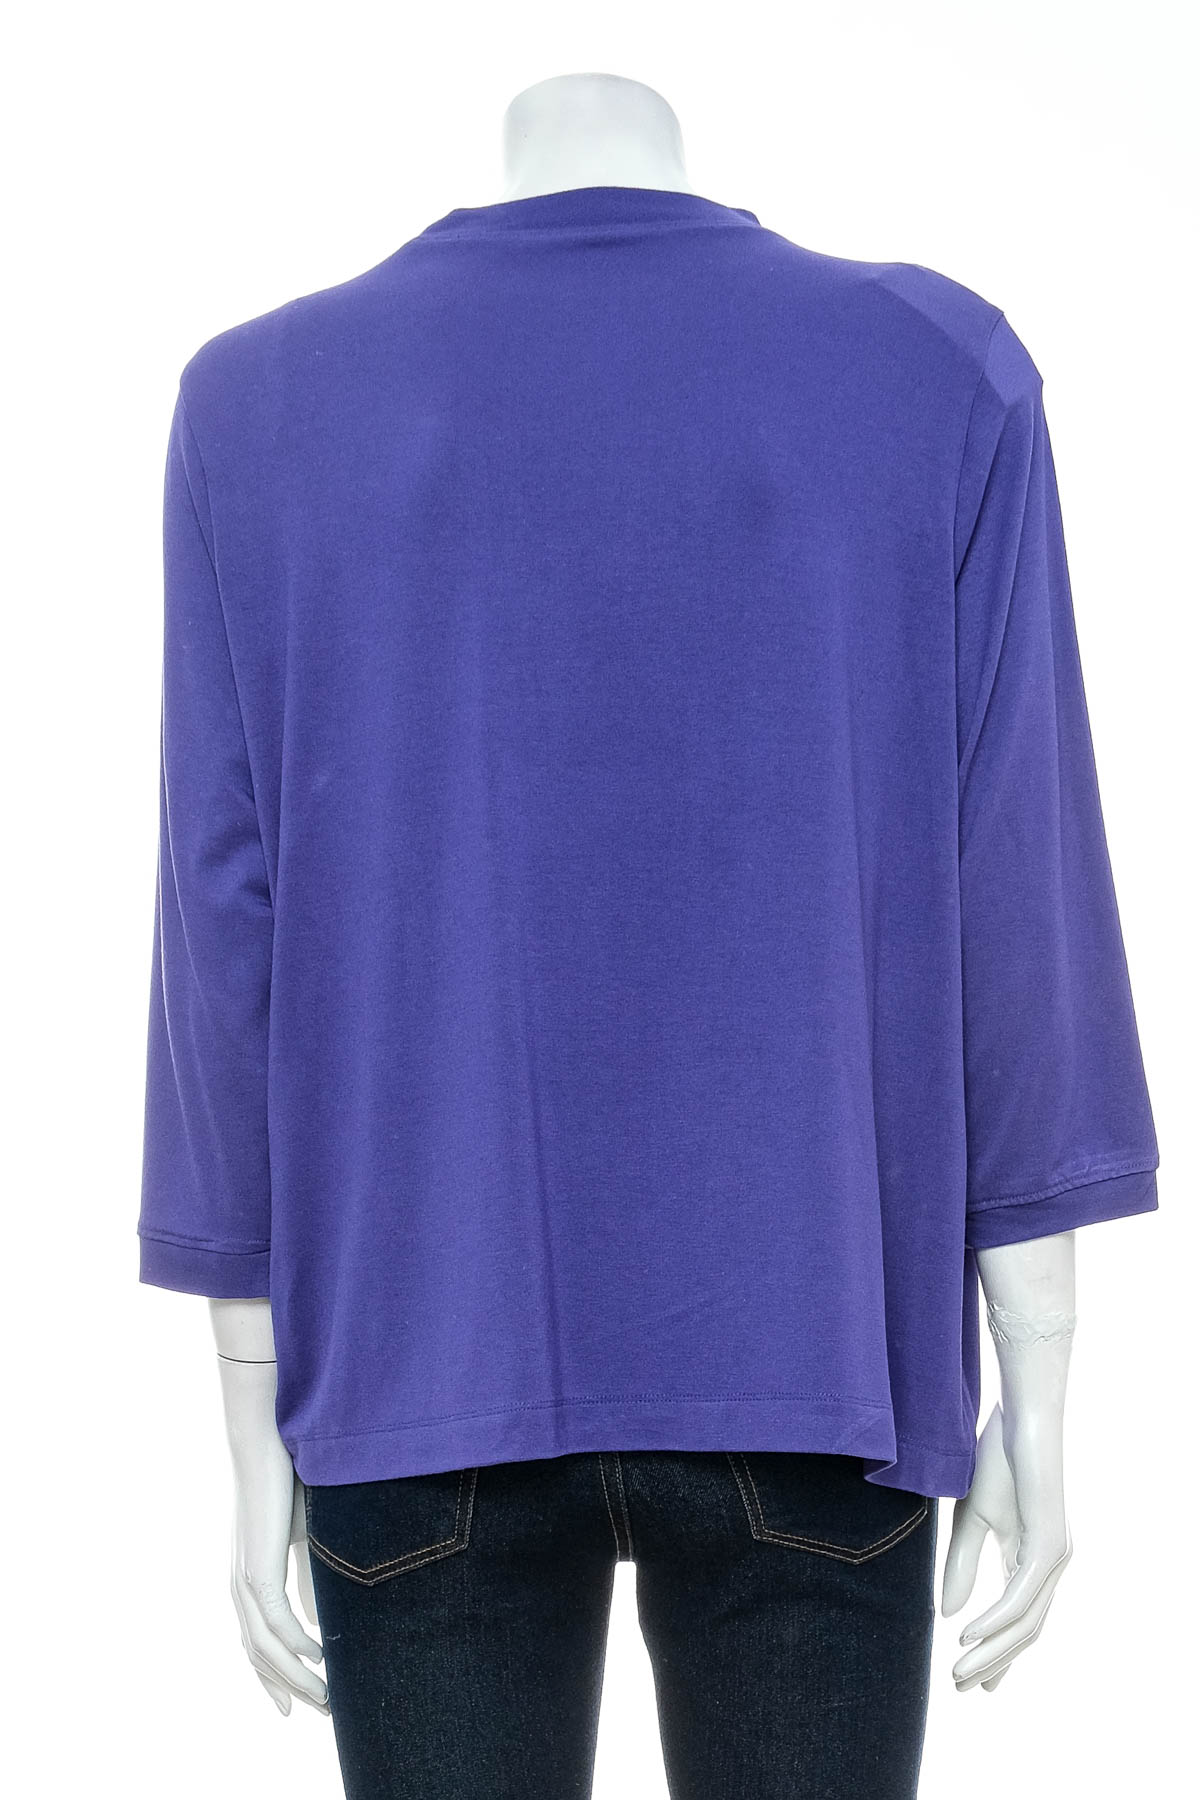 Women's blouse - Esmara - 1